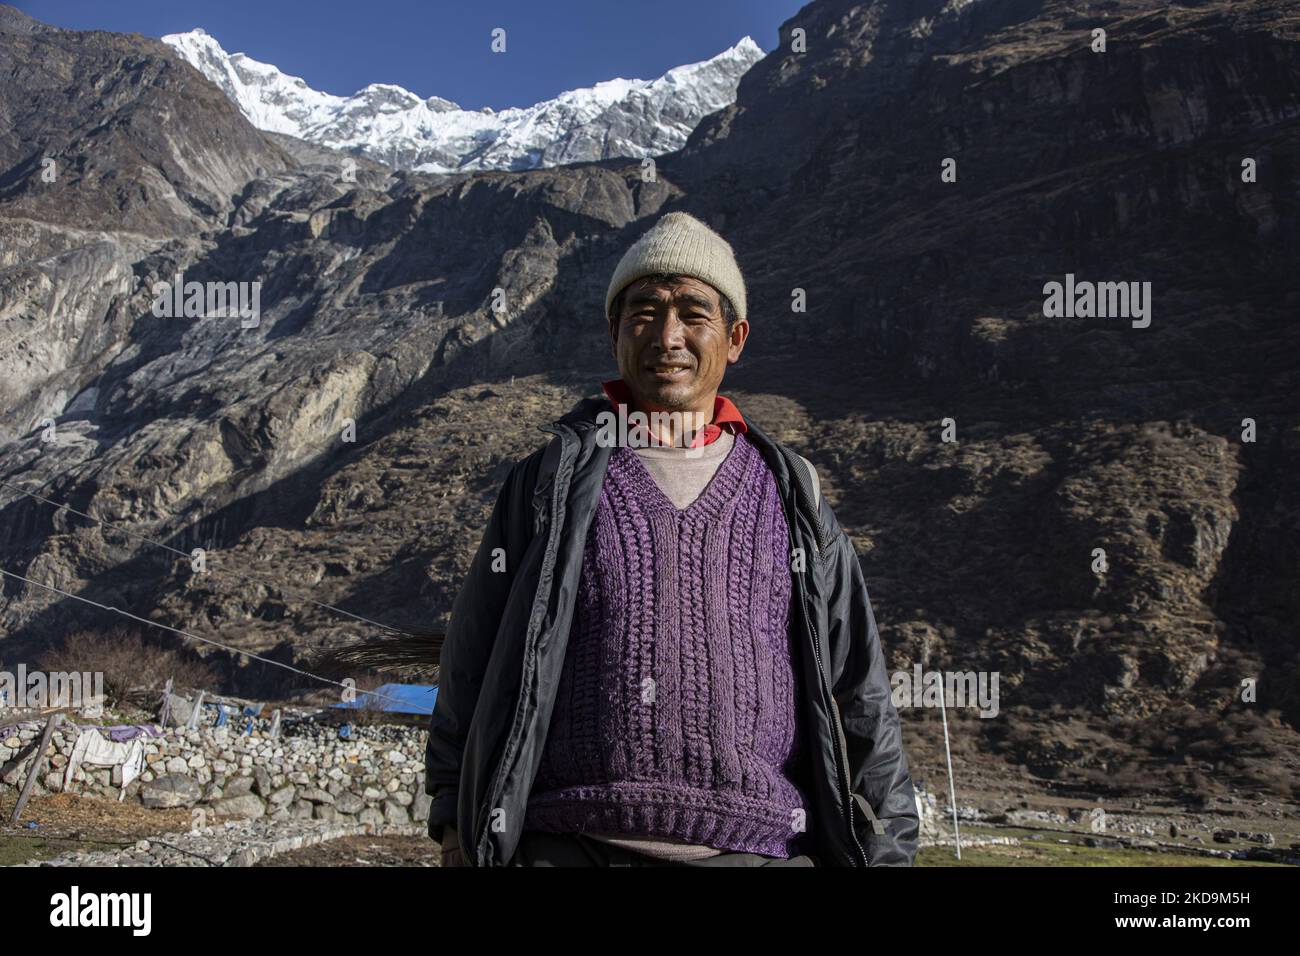 Ein Einheimischer, der unter dem Langtang Lirung-Gipfel gesehen wurde. Langtang Lirung Peak aus Sicht des Dorfes Langtang, Teil des Langtang Himal Berges in Nepal mit dem höchsten Punkt in einer Höhe von 7234m oder 23734 Fuß. Der Langtang Lirung ist der 99. höchste Berg der Welt und wurde 1978 zum ersten Mal erreicht. Am 25. April 2015 führte ein massives Erdbeben der Stärke 7,8 zu einer Lawine und einem Erdrutsch im Dorf Langtang, bei dem direkt 243 Menschen getötet und das Dorf verschwungen wurden. Der Langtang National Park ist ein beliebtes Trekking- und Reiseland für ausländische Wanderer und Einheimische, die hier leben Stockfoto